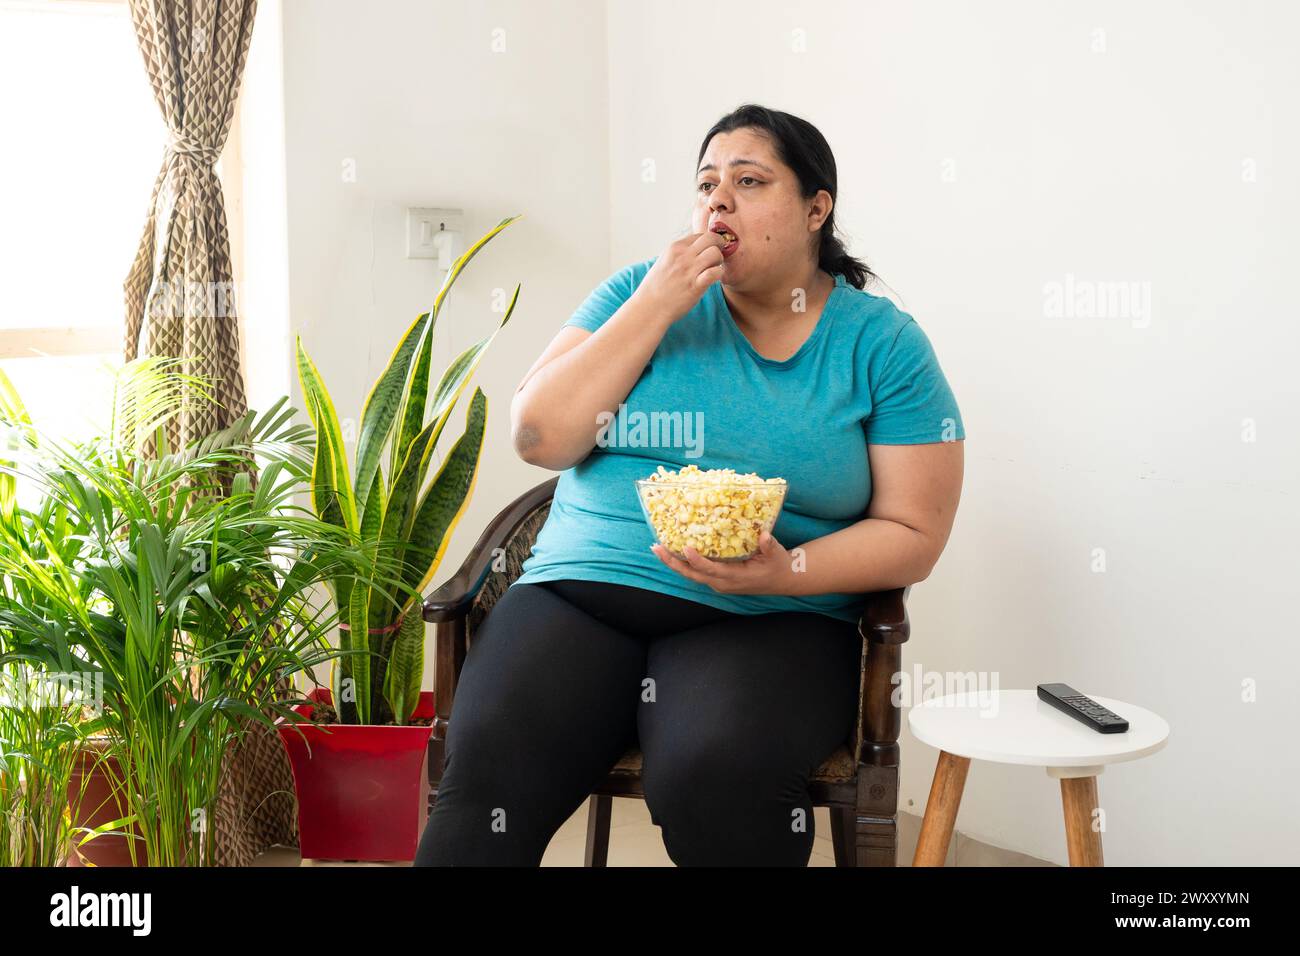 Donna indiana grassa in sovrappeso seduta sulla sedia a mangiare popcorn a casa. Le donne più grandi possono gustare spuntini. Concetto di alimentazione malsana. Foto Stock